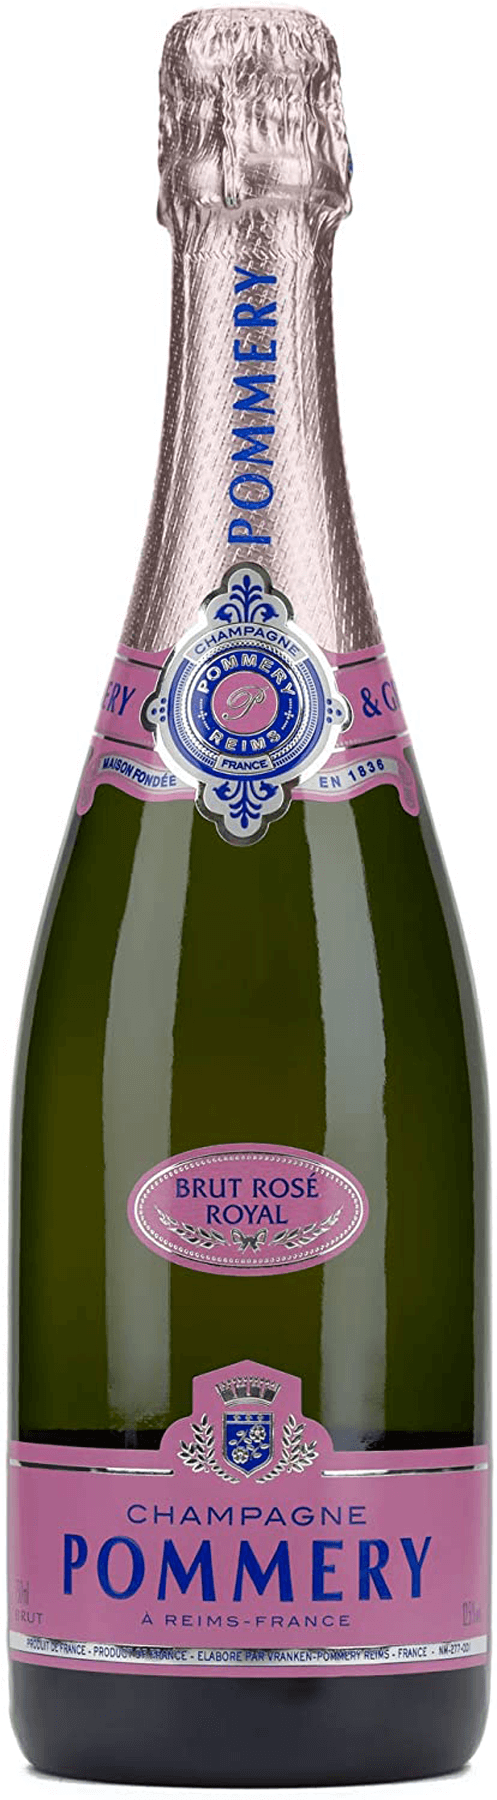 Liter 0,75 Rose Royal Champagner Brut Pommery